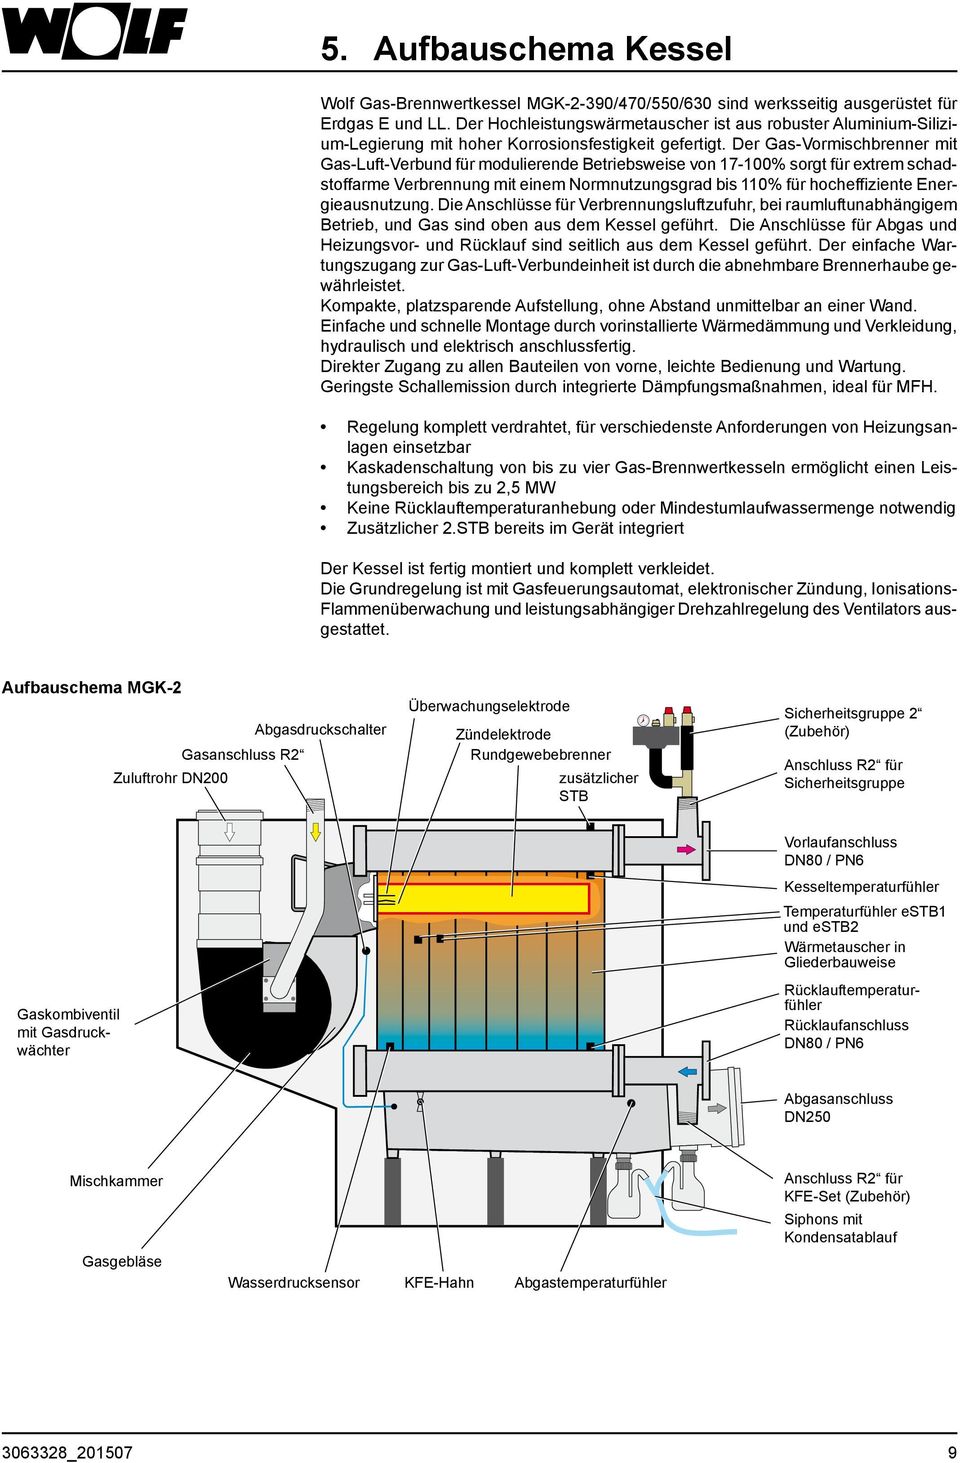 Der Gas-Vormischbrenner mit Gas-Luft-Verbund für modulierende Betriebsweise von 17-100% sorgt für extrem schadstoffarme Verbrennung mit einem Normnutzungsgrad bis 110% für hocheffiziente